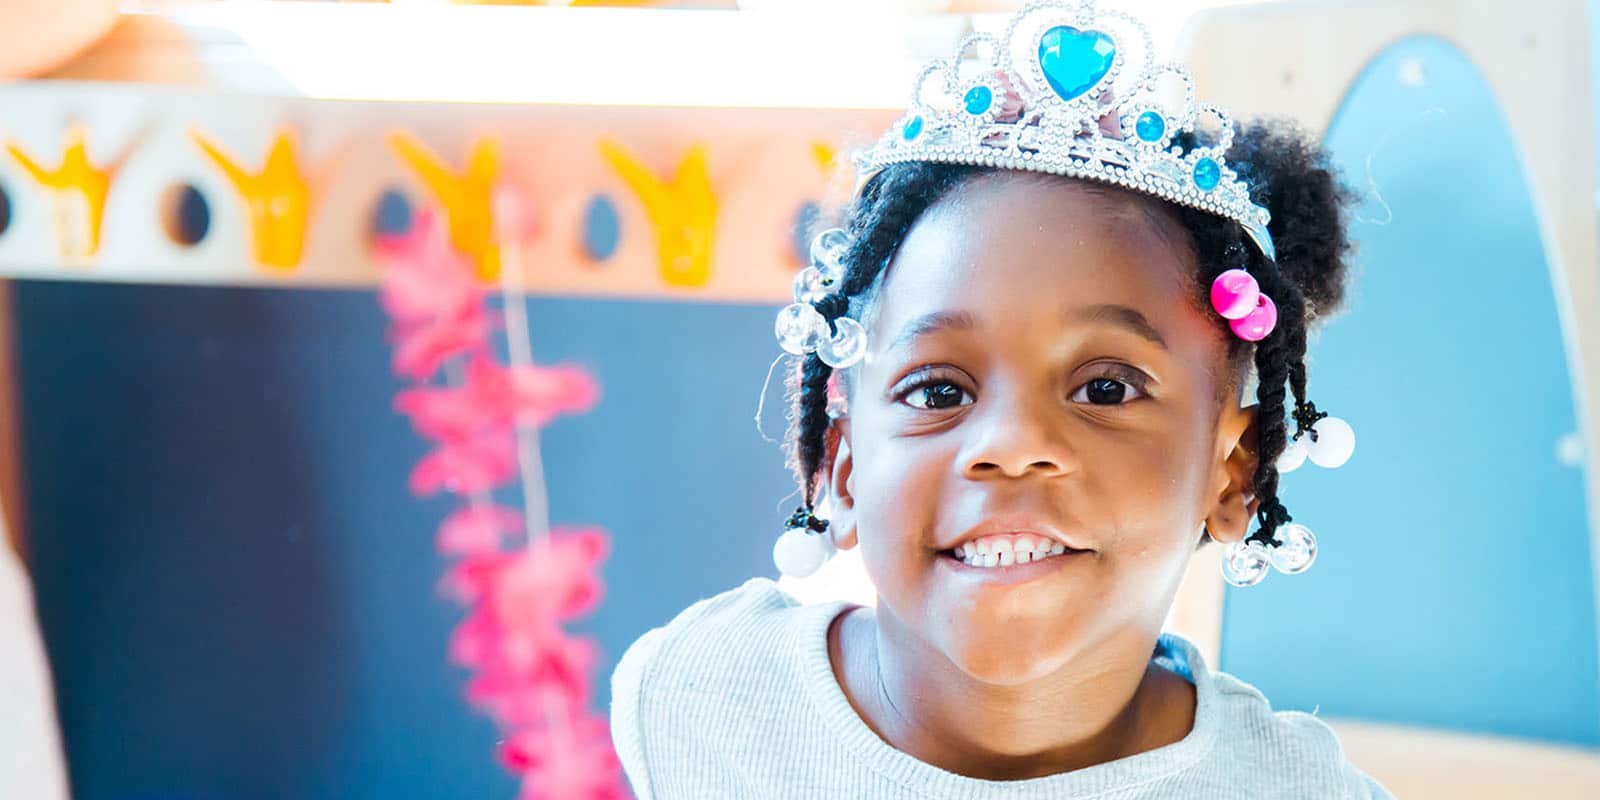 Young child wearing tiara